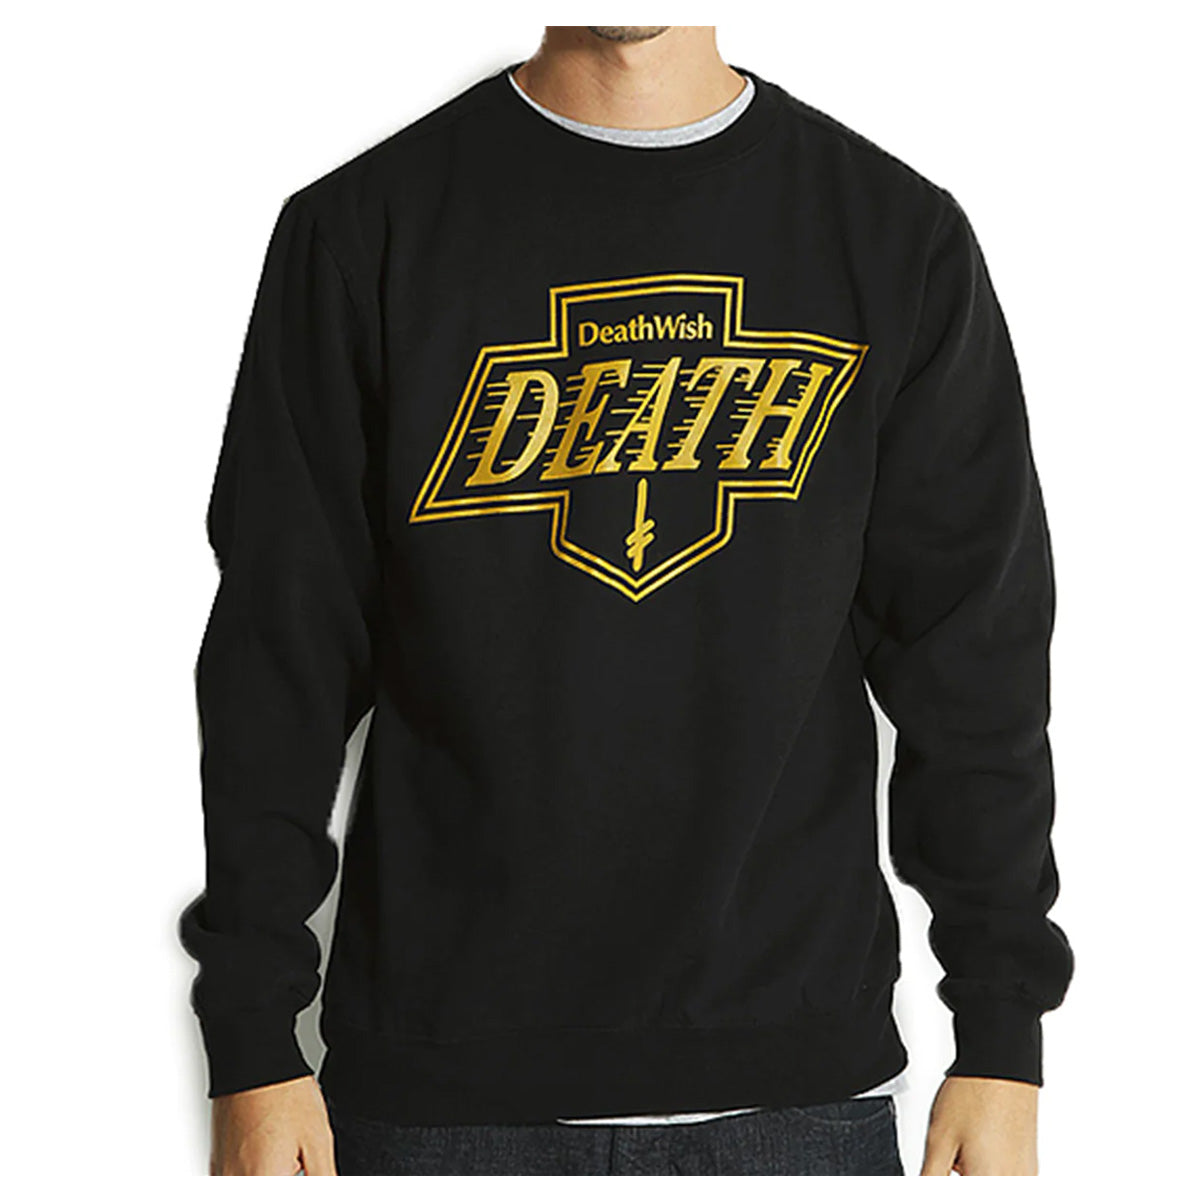 Deathwish Death Kings Men's Sweater Sweatshirts